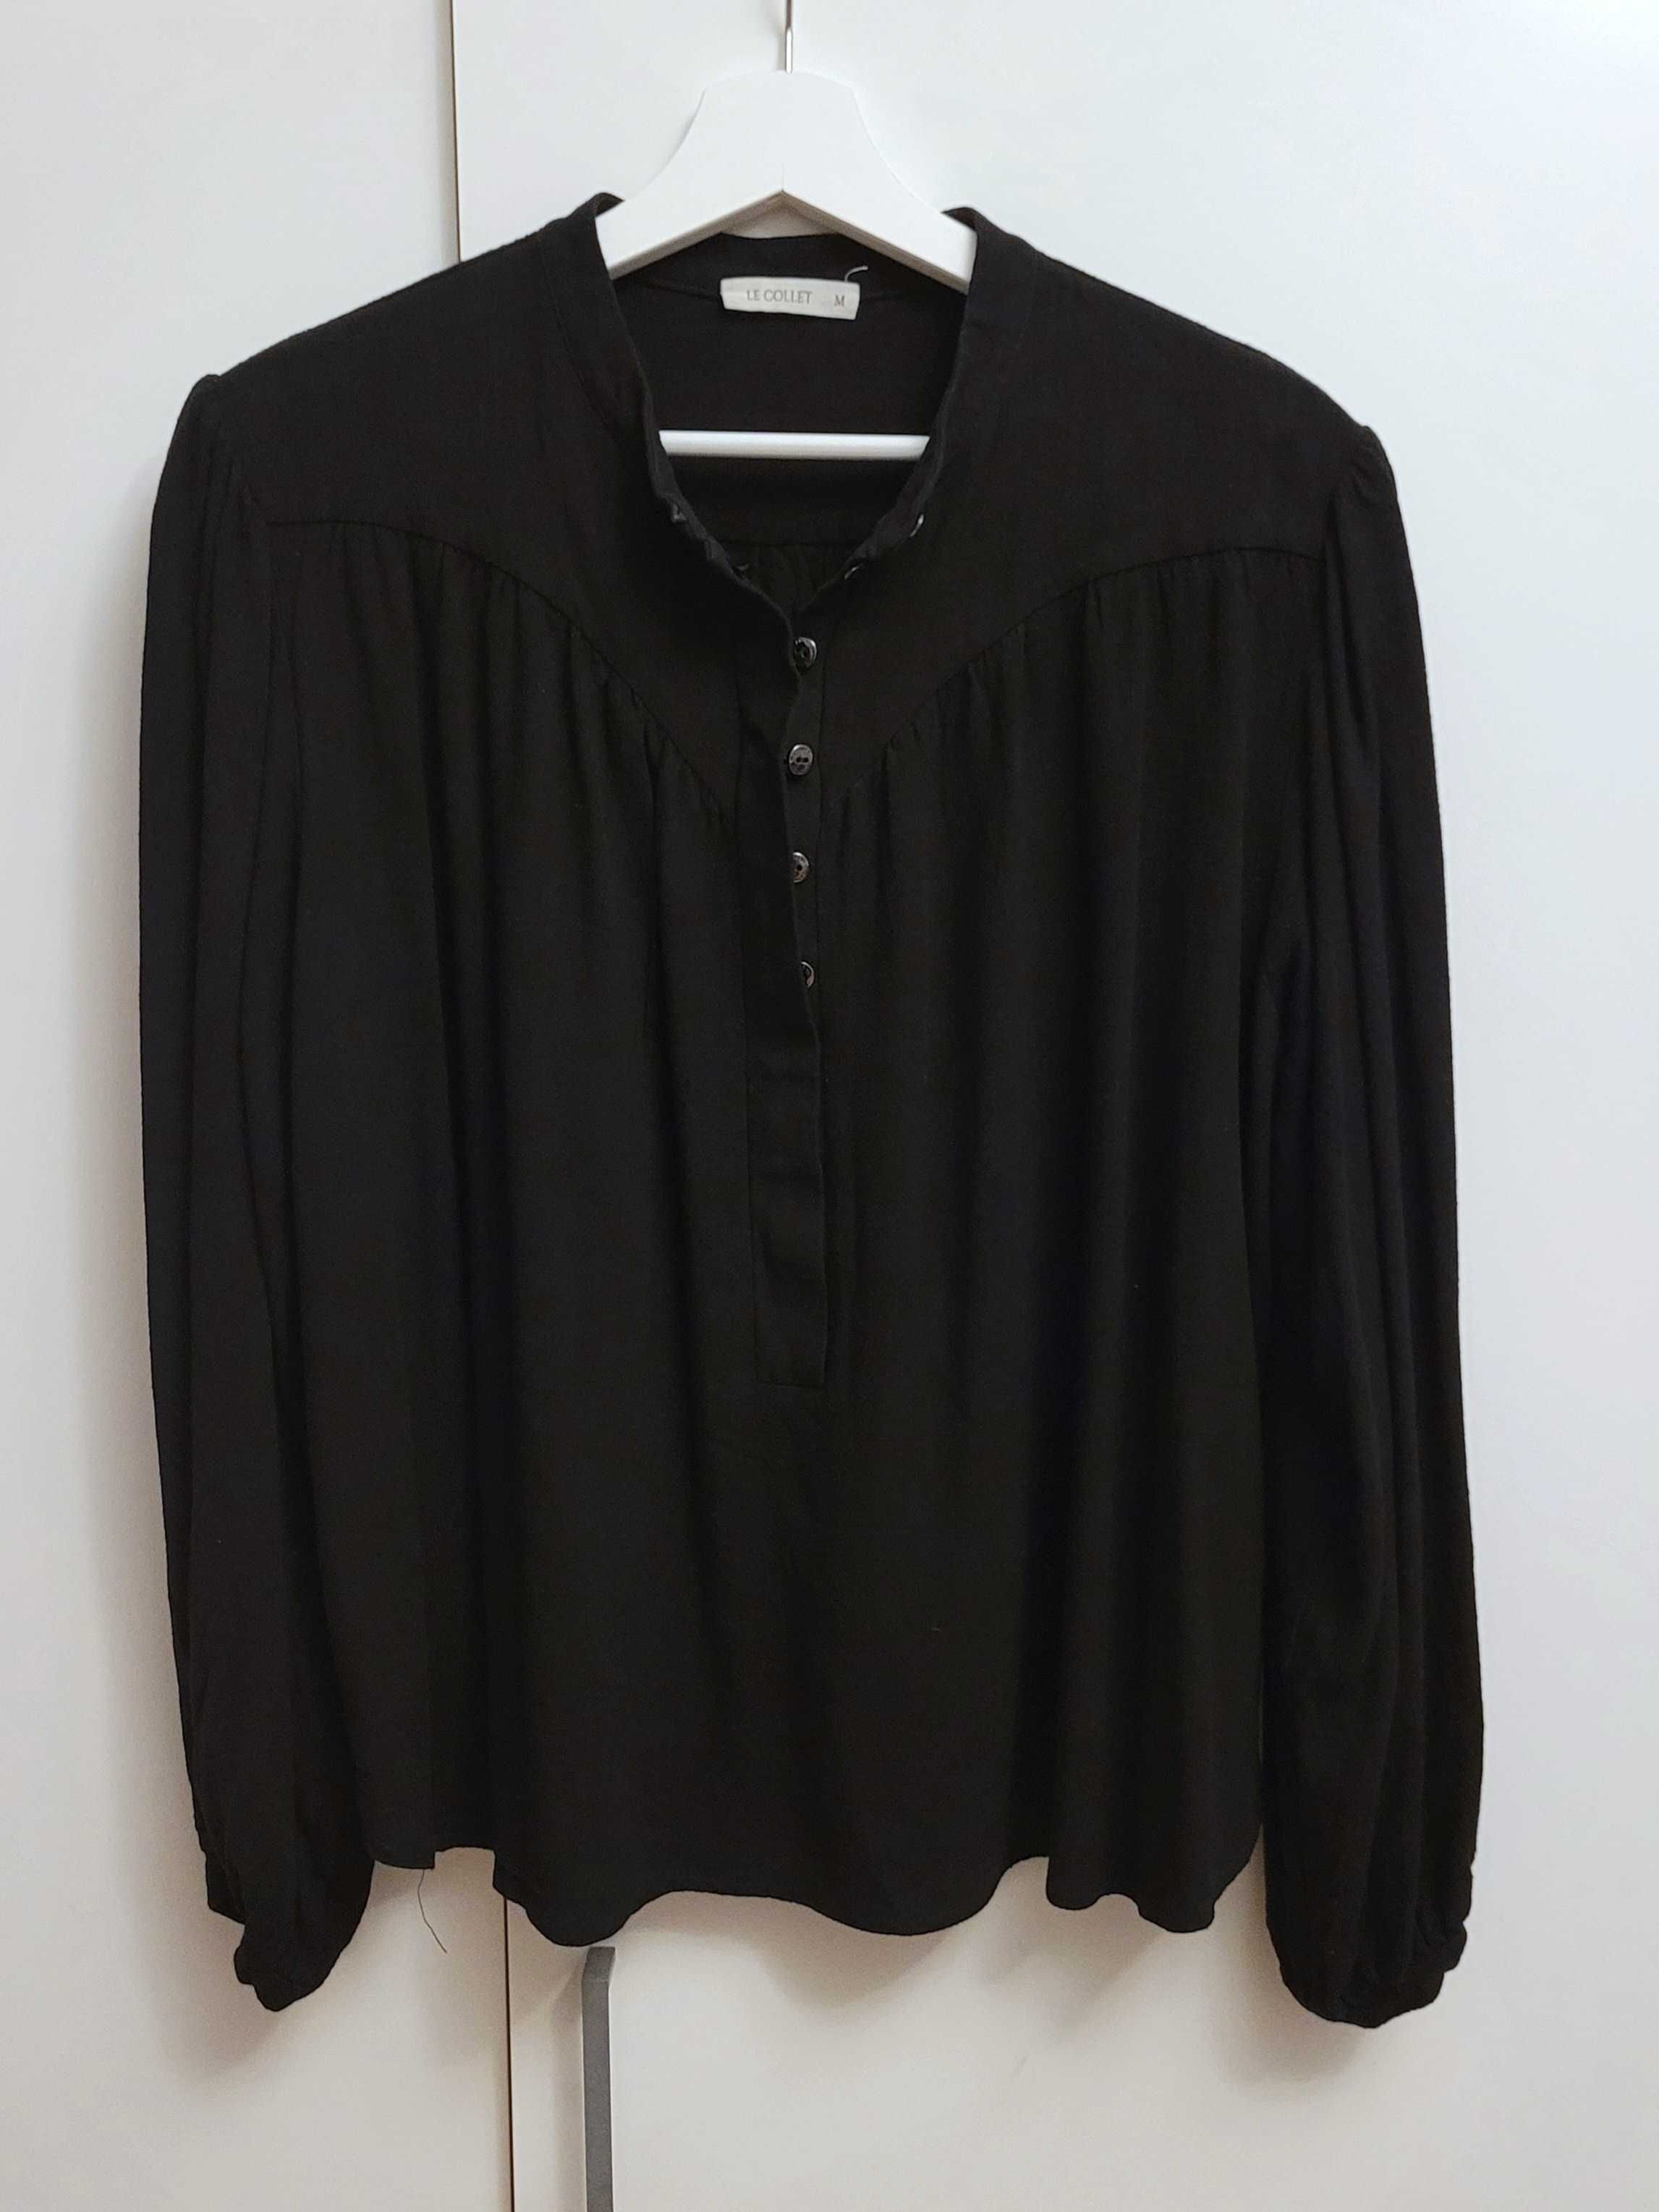 Le Collet koszula Laida black M 38 czarna wiskoza len boho vintage